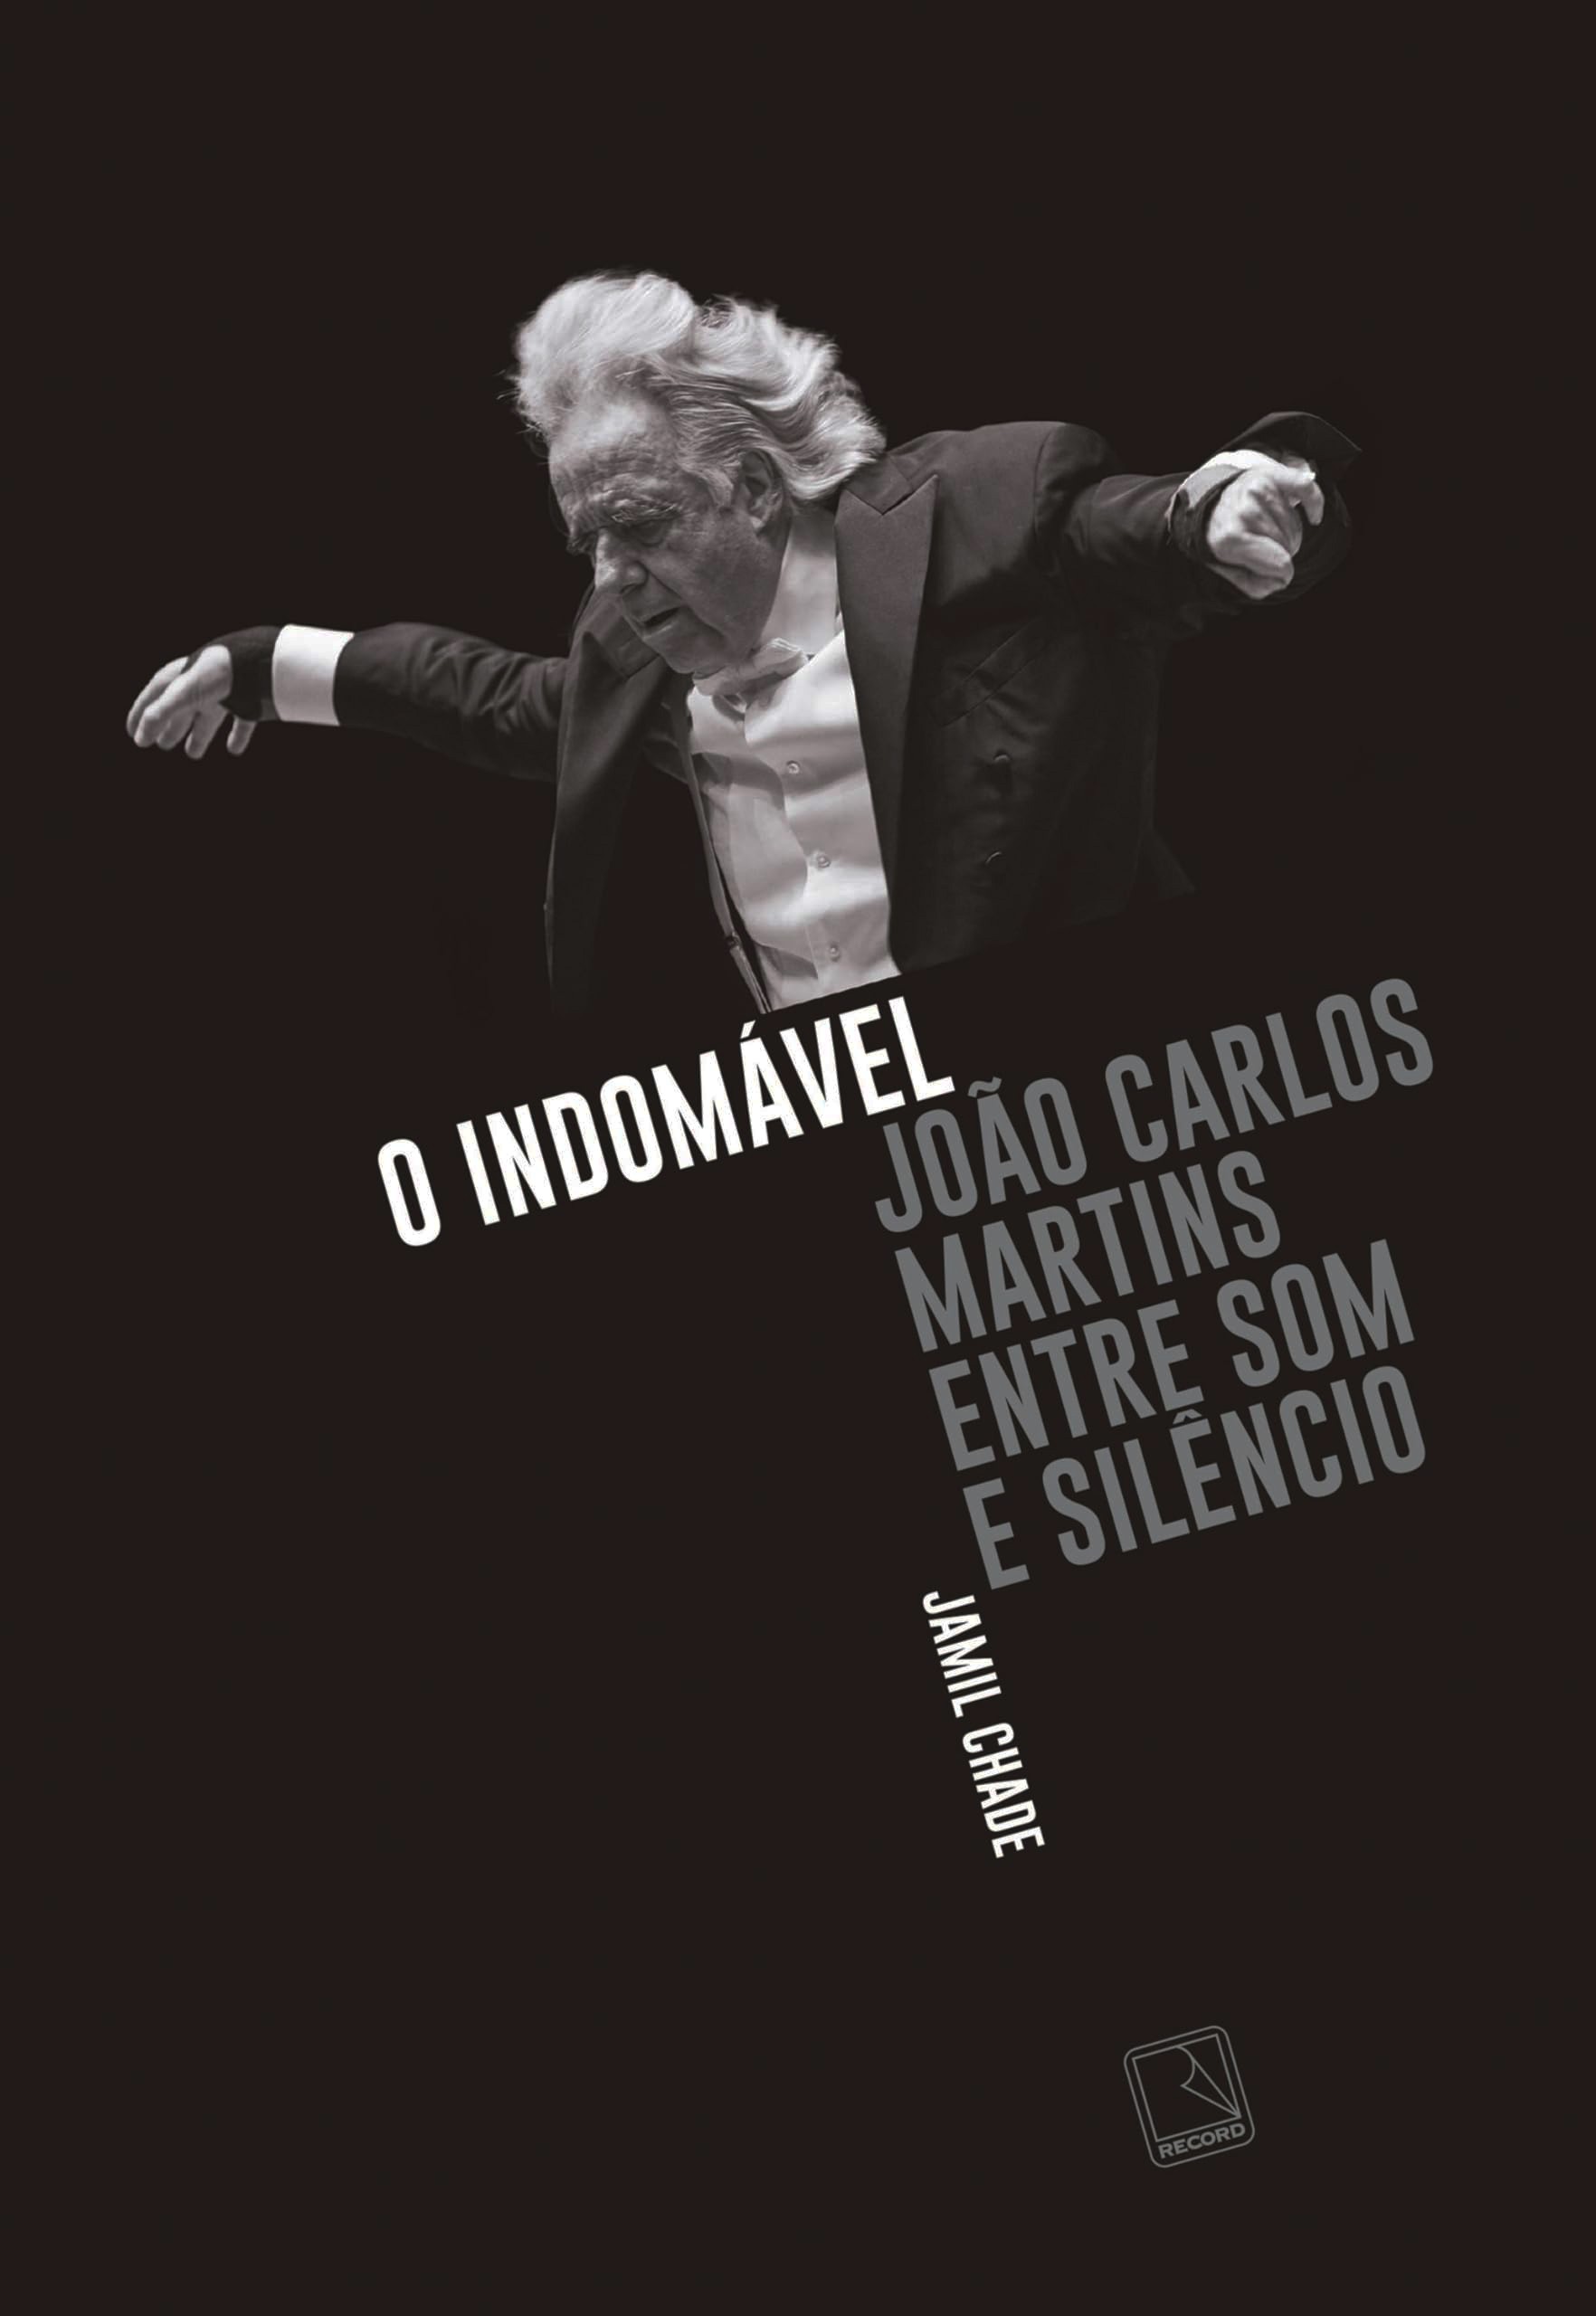 Pianista e maestro João Carlos Martins tem a vida incrível contada na biografia 'O Indomável entre som e silêncio'